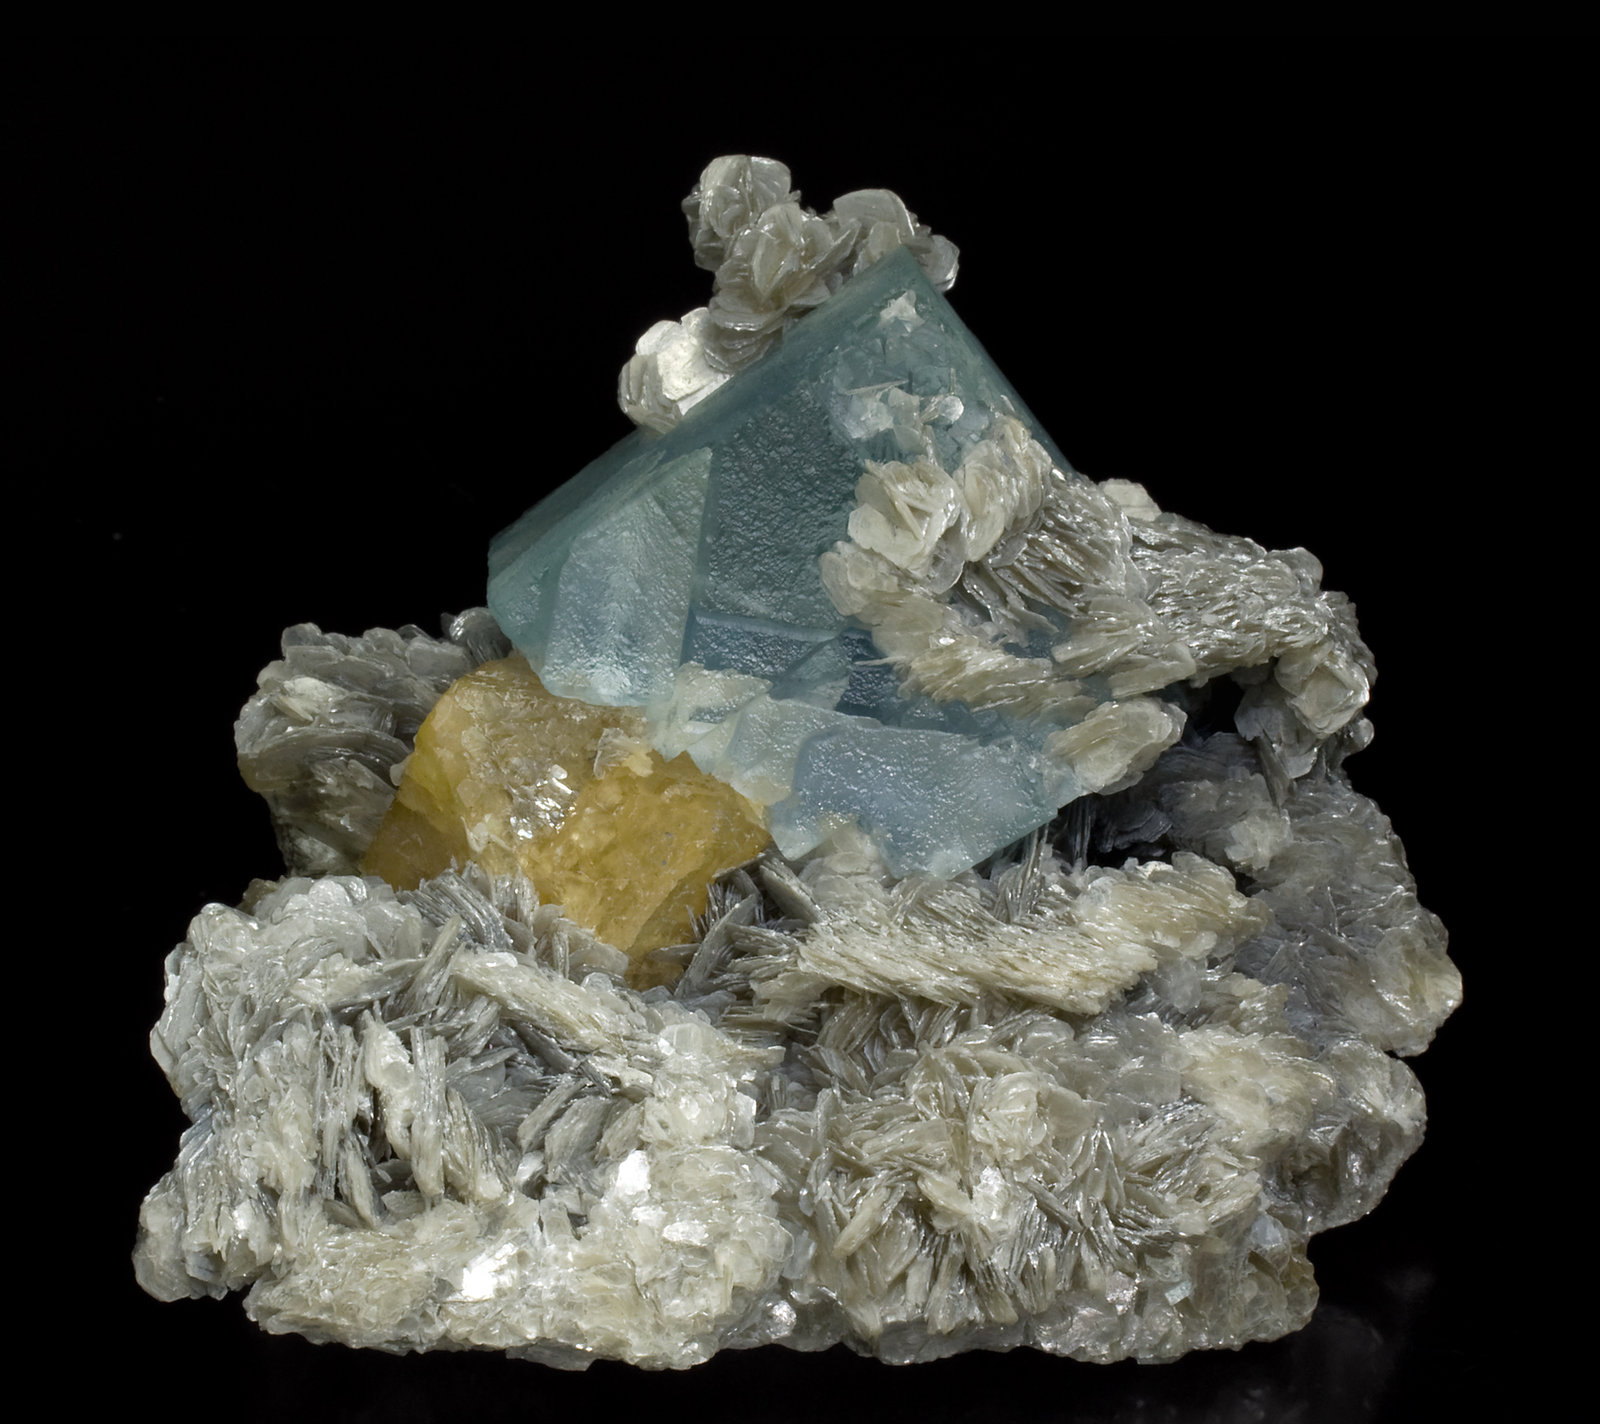 specimens/s_imagesW7/Fluorite-MX91W7f.jpg